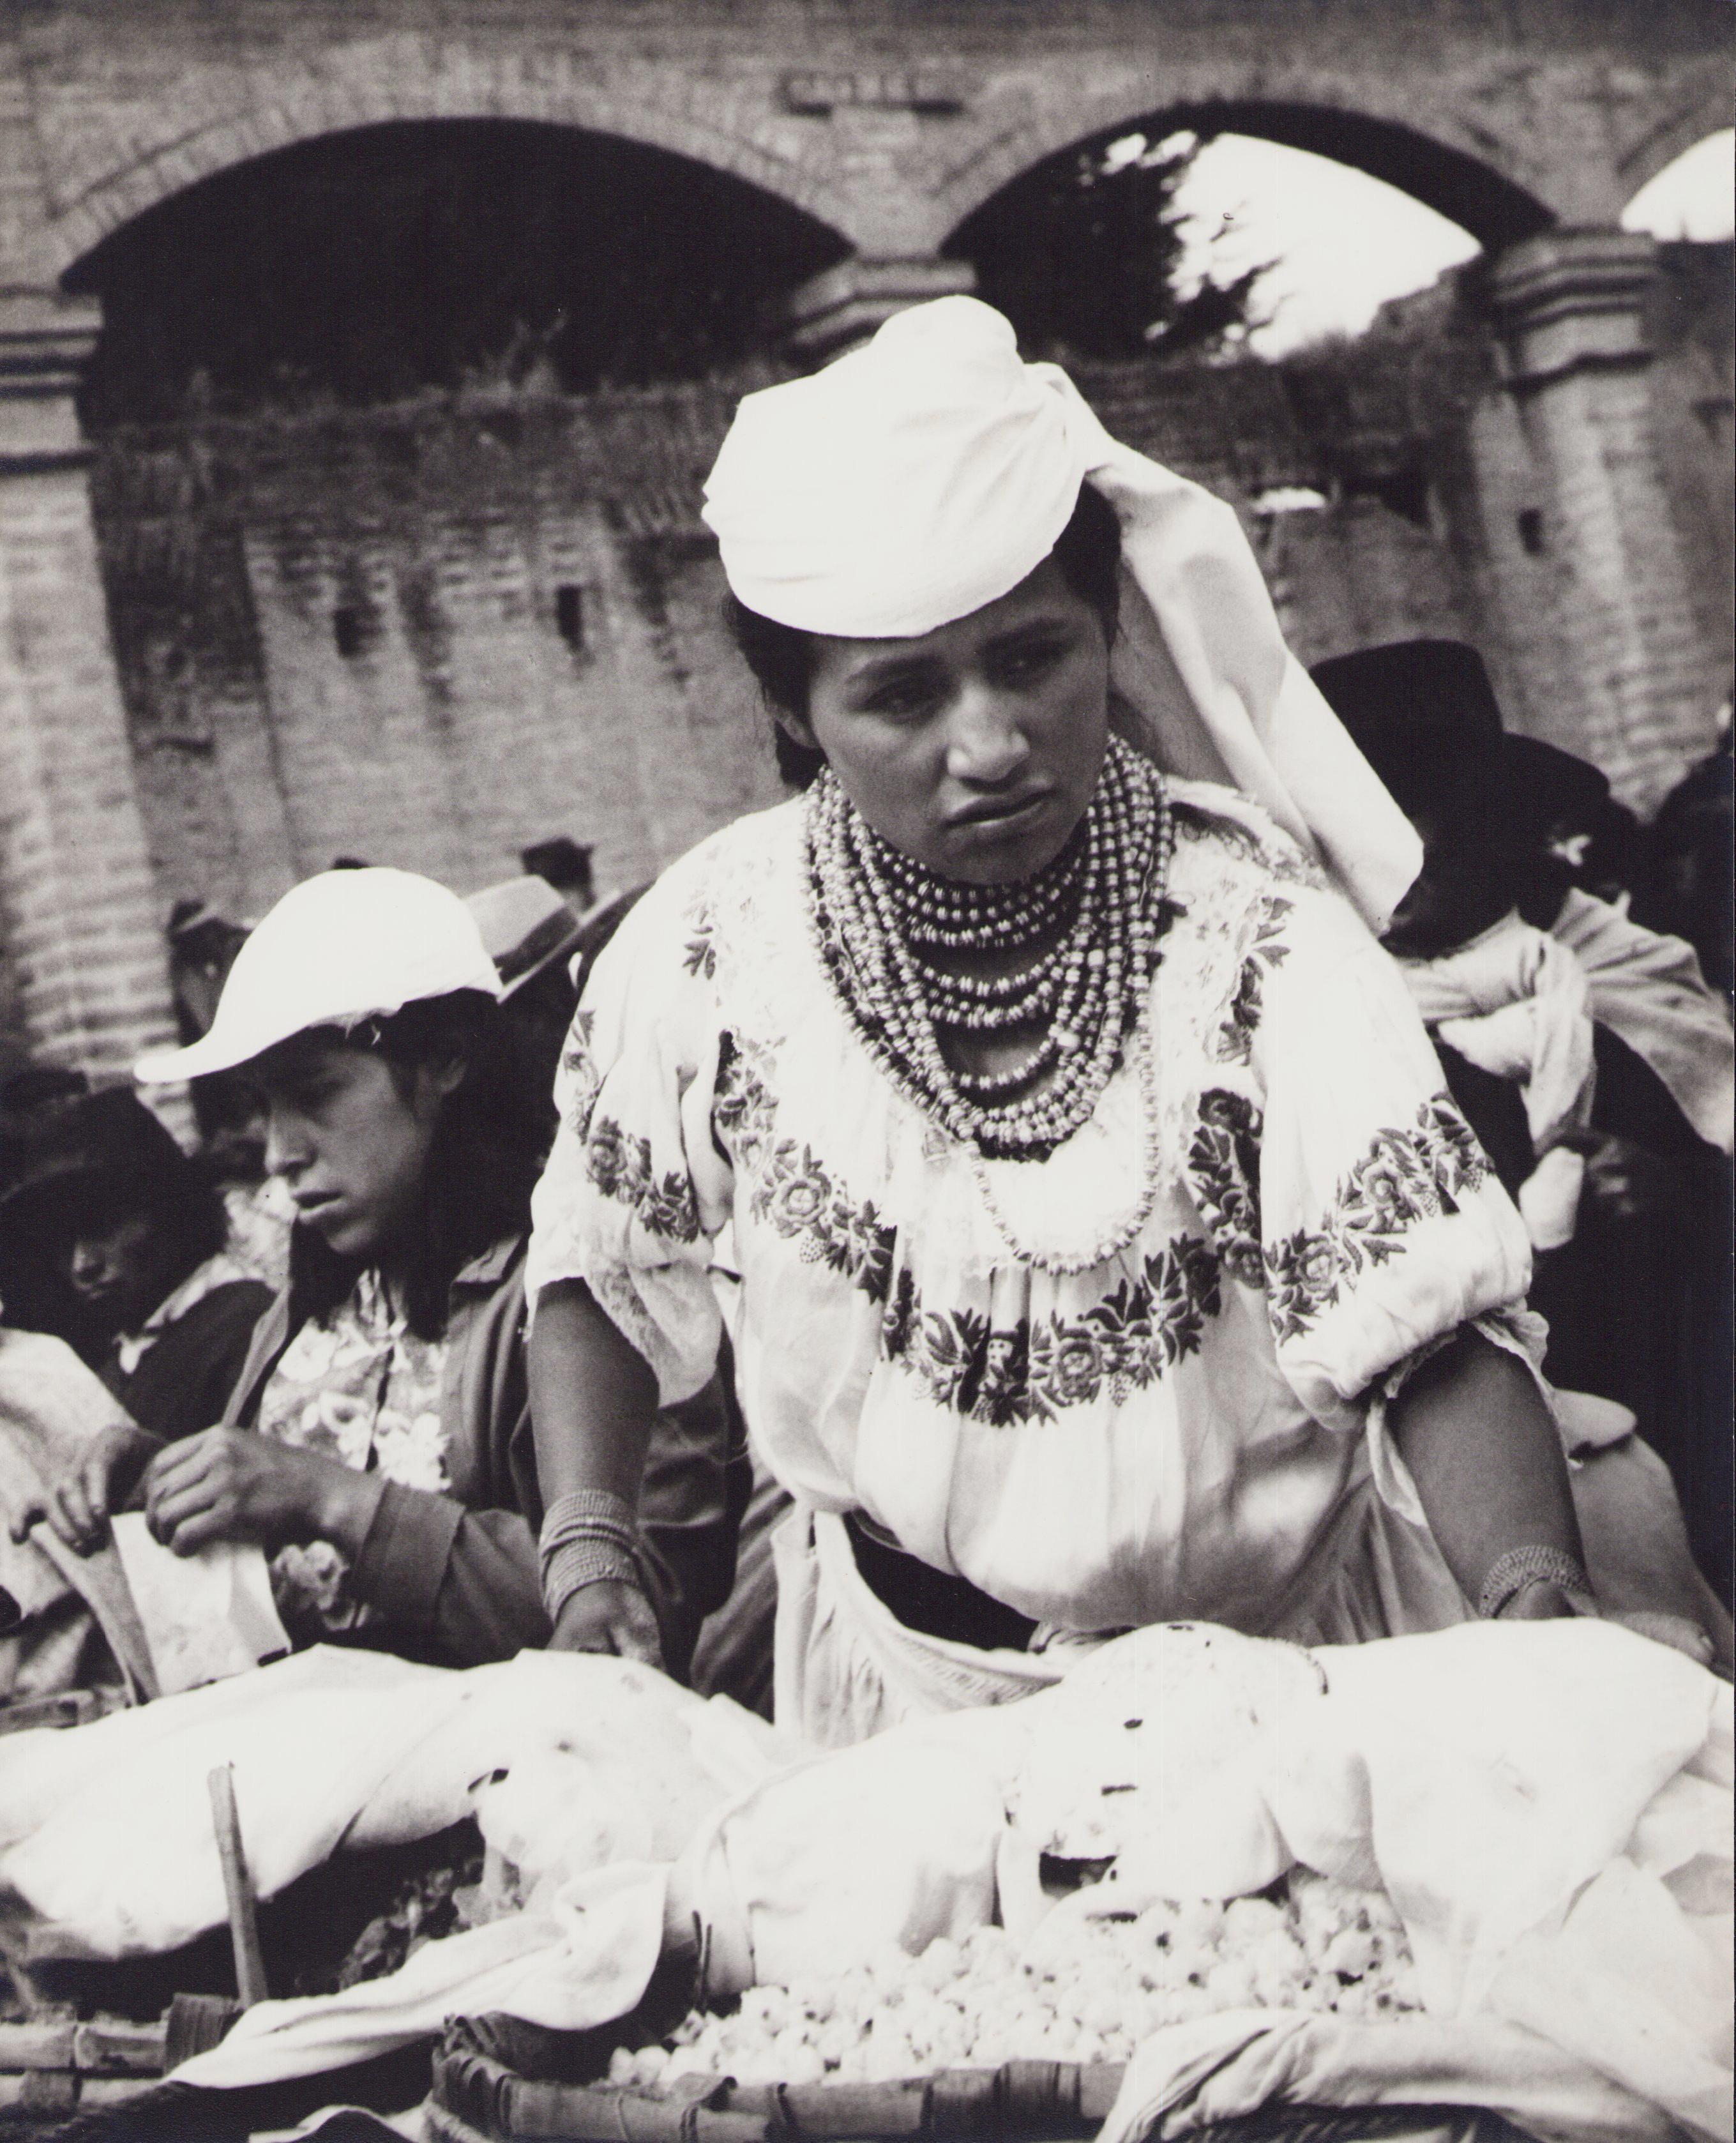 Black and White Photograph Hanna Seidel - Équateur, Femme, marché, photographie en noir et blanc, années 1960, 28,2 x 23,1 cm